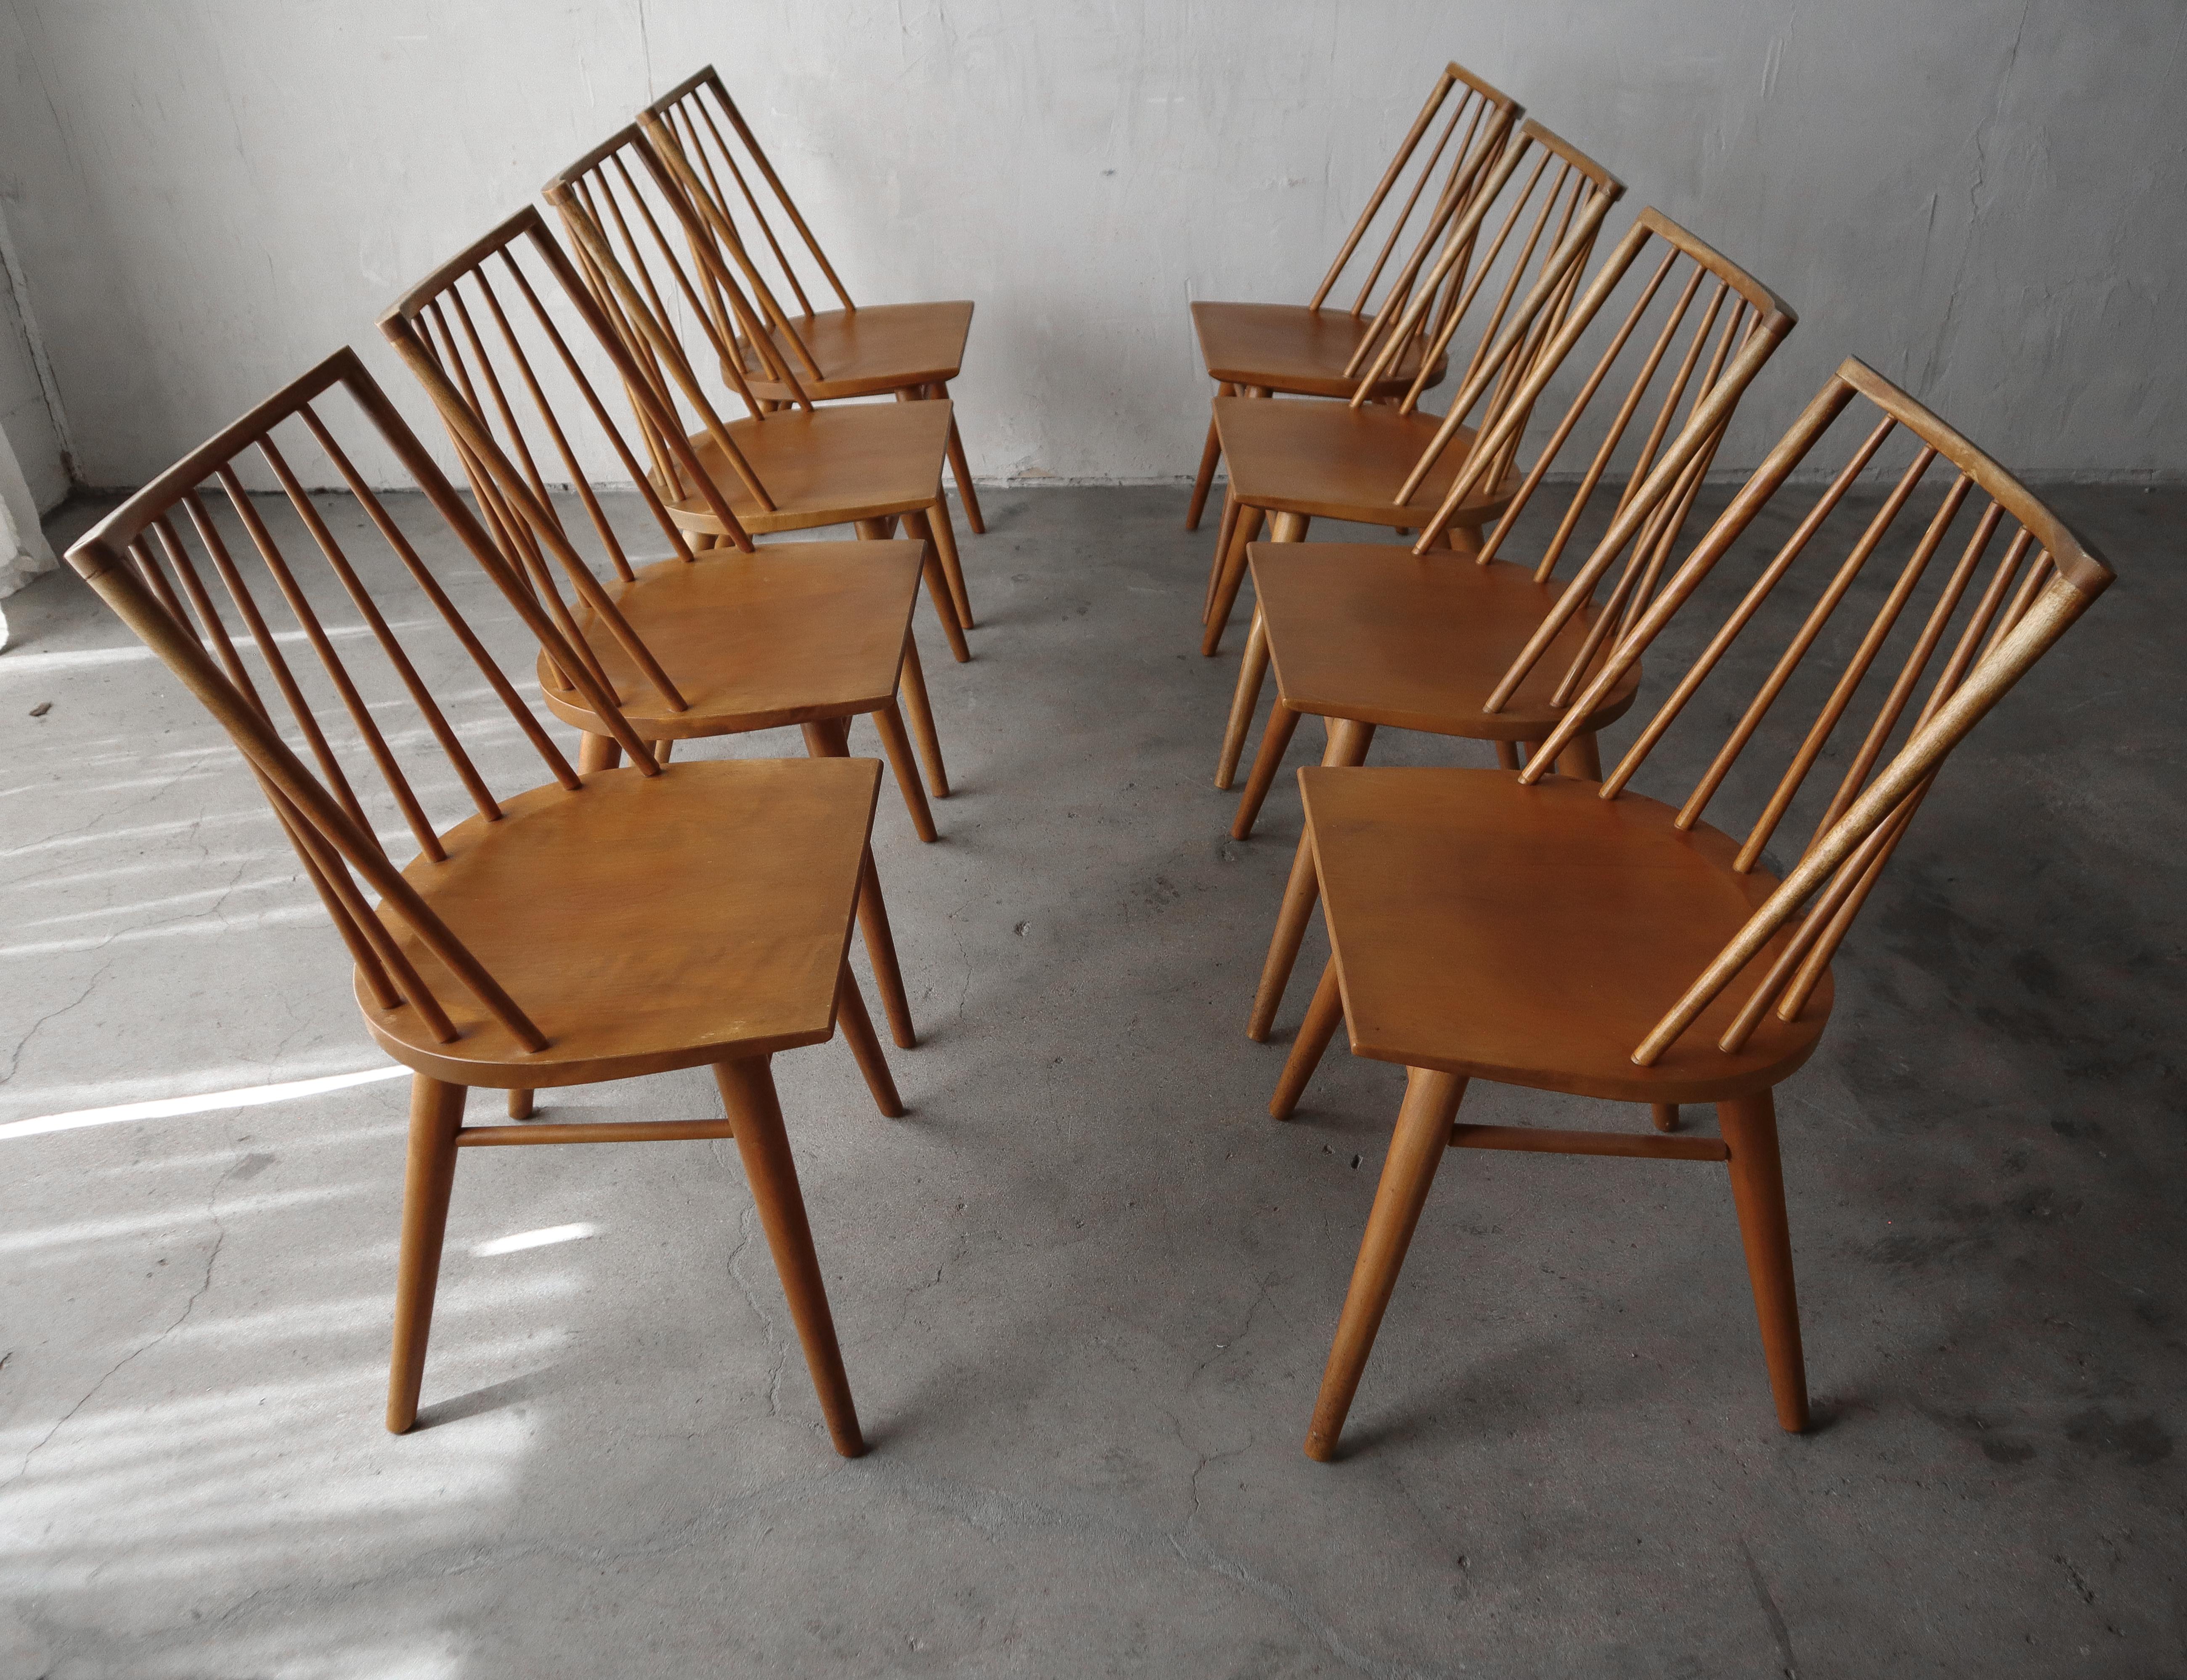 Schöner Satz von 8 Esstischstühlen mit Spindelrücken aus der Mitte des Jahrhunderts von Conant Ball. Diese Stühle haben ein sehr klares, minimalistisches Design, ihre solide Konstruktion aus Bergahorn macht sie sowohl stilvoll als auch